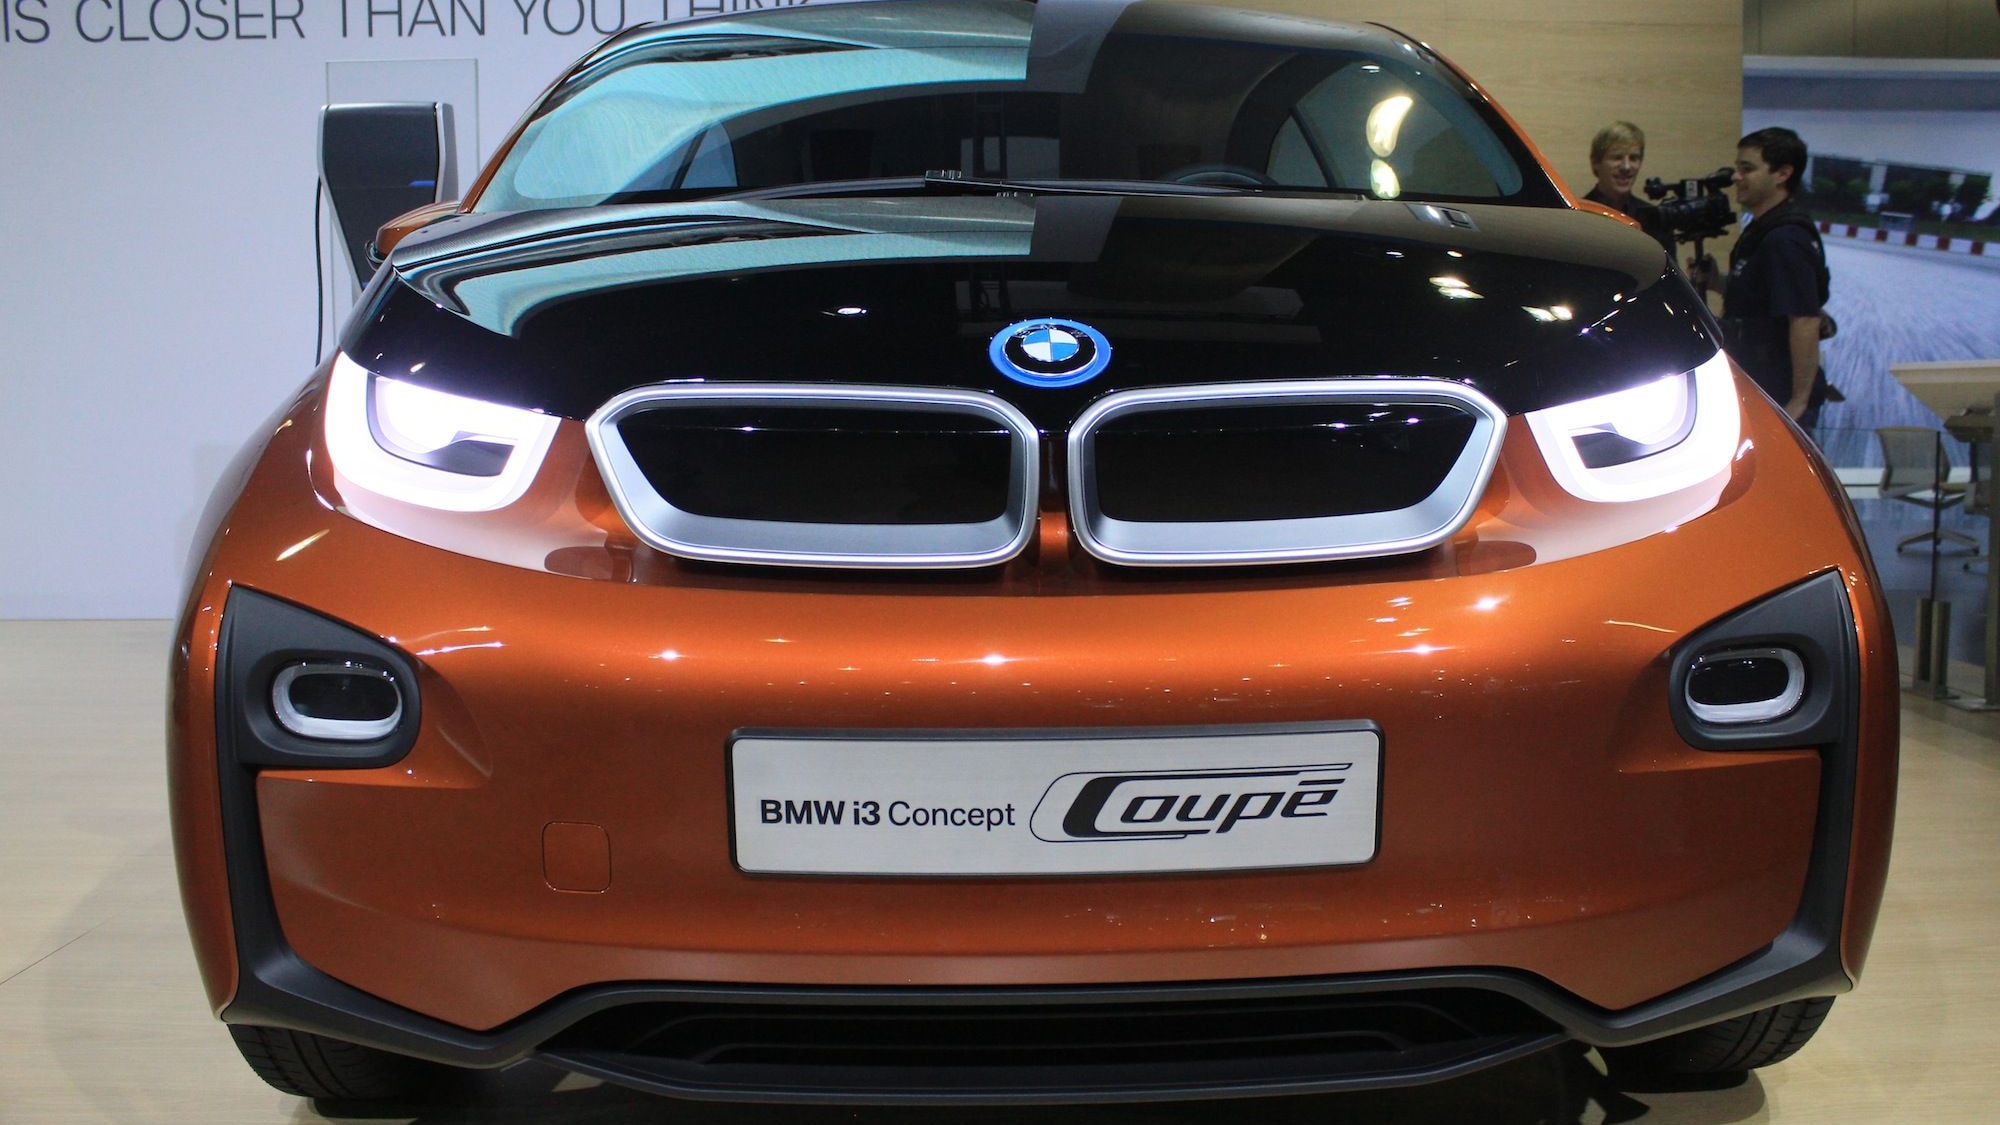 BMW i3 Coupe Concept Live Shots: Los Angeles Auto Show